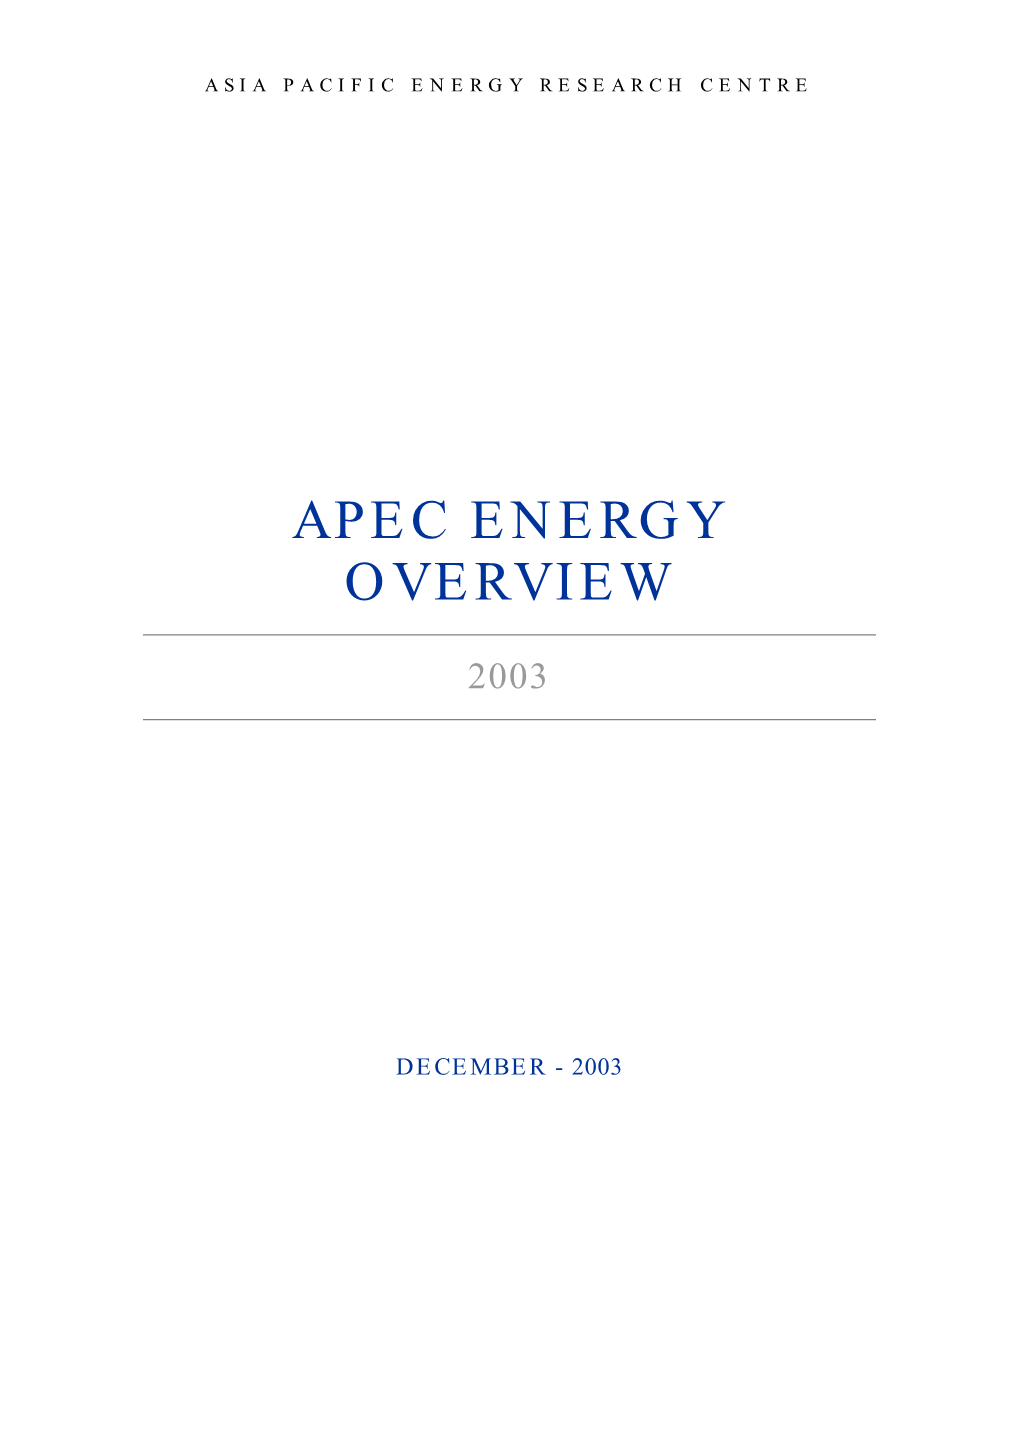 APEC Energy Overview 2003